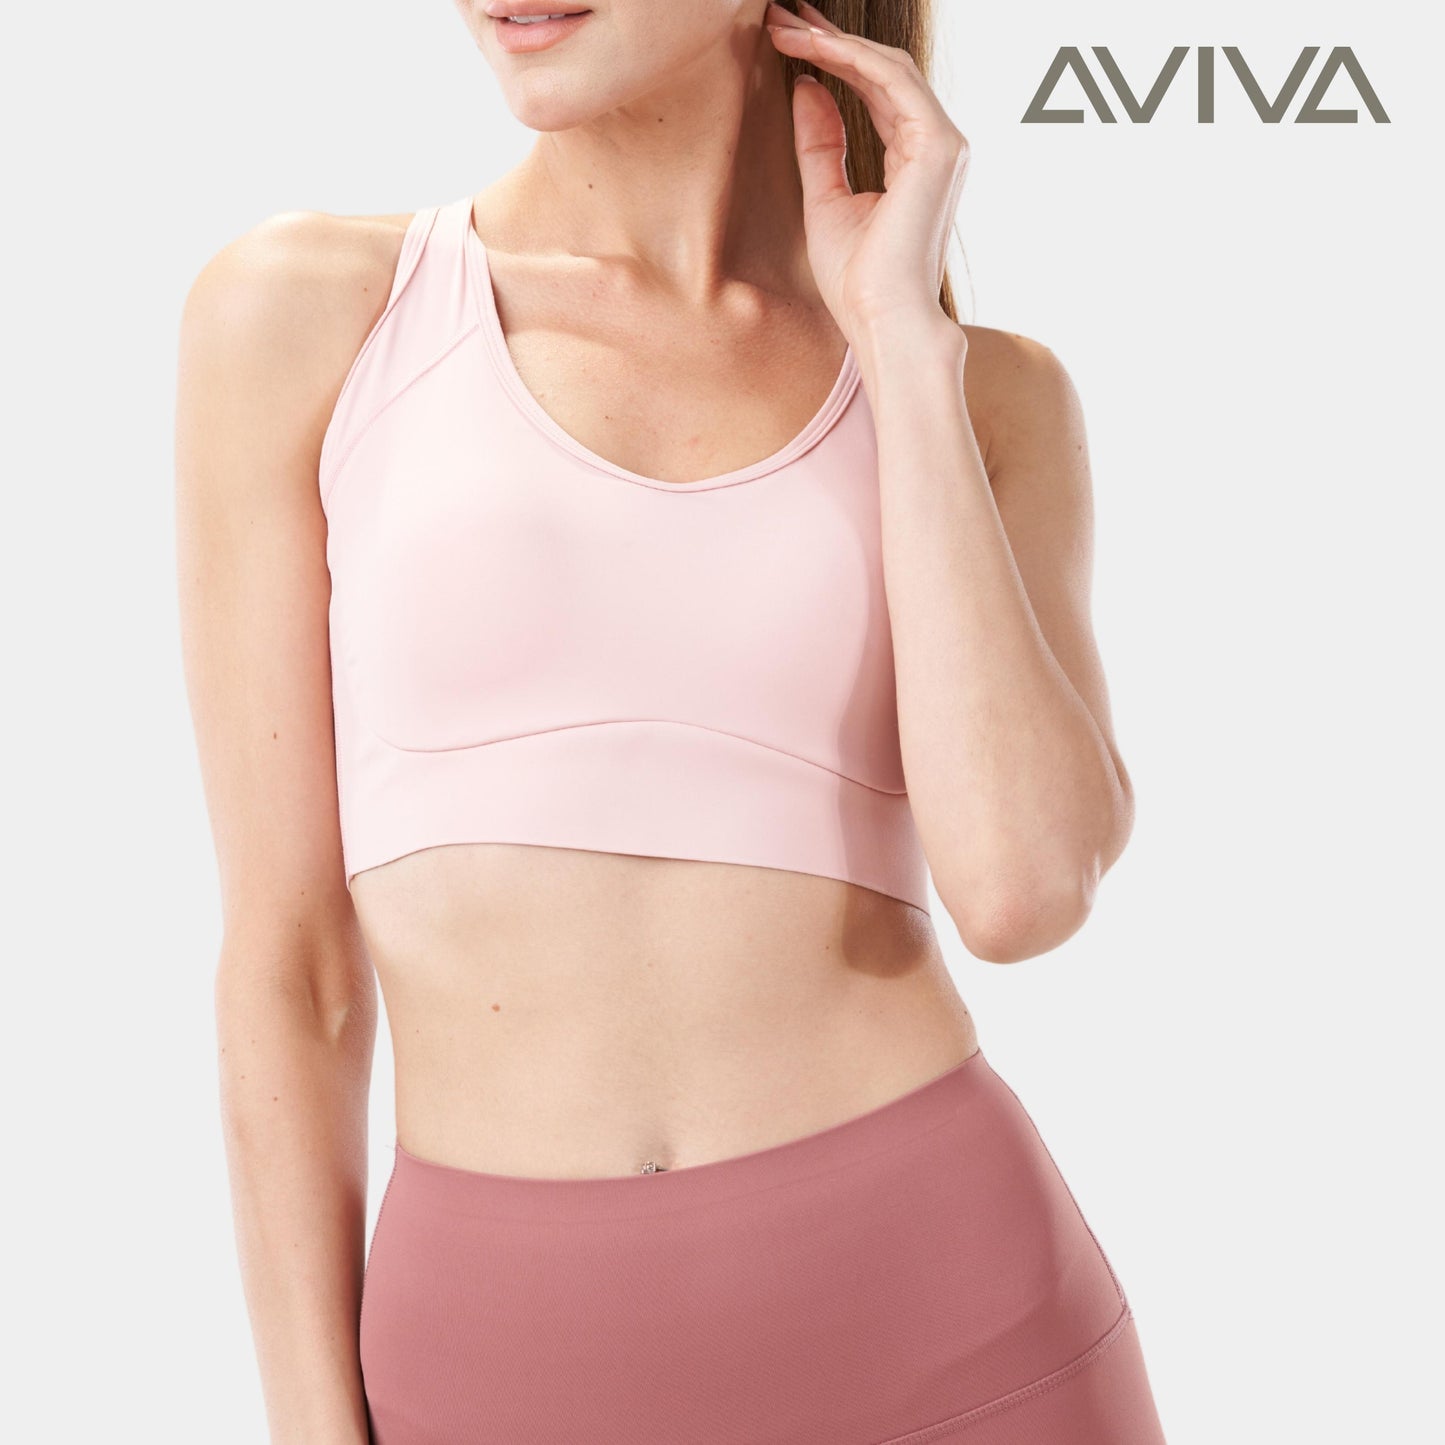 AVIVA ShapeUP Adjustable & Comfortable sport bra (81-6107)